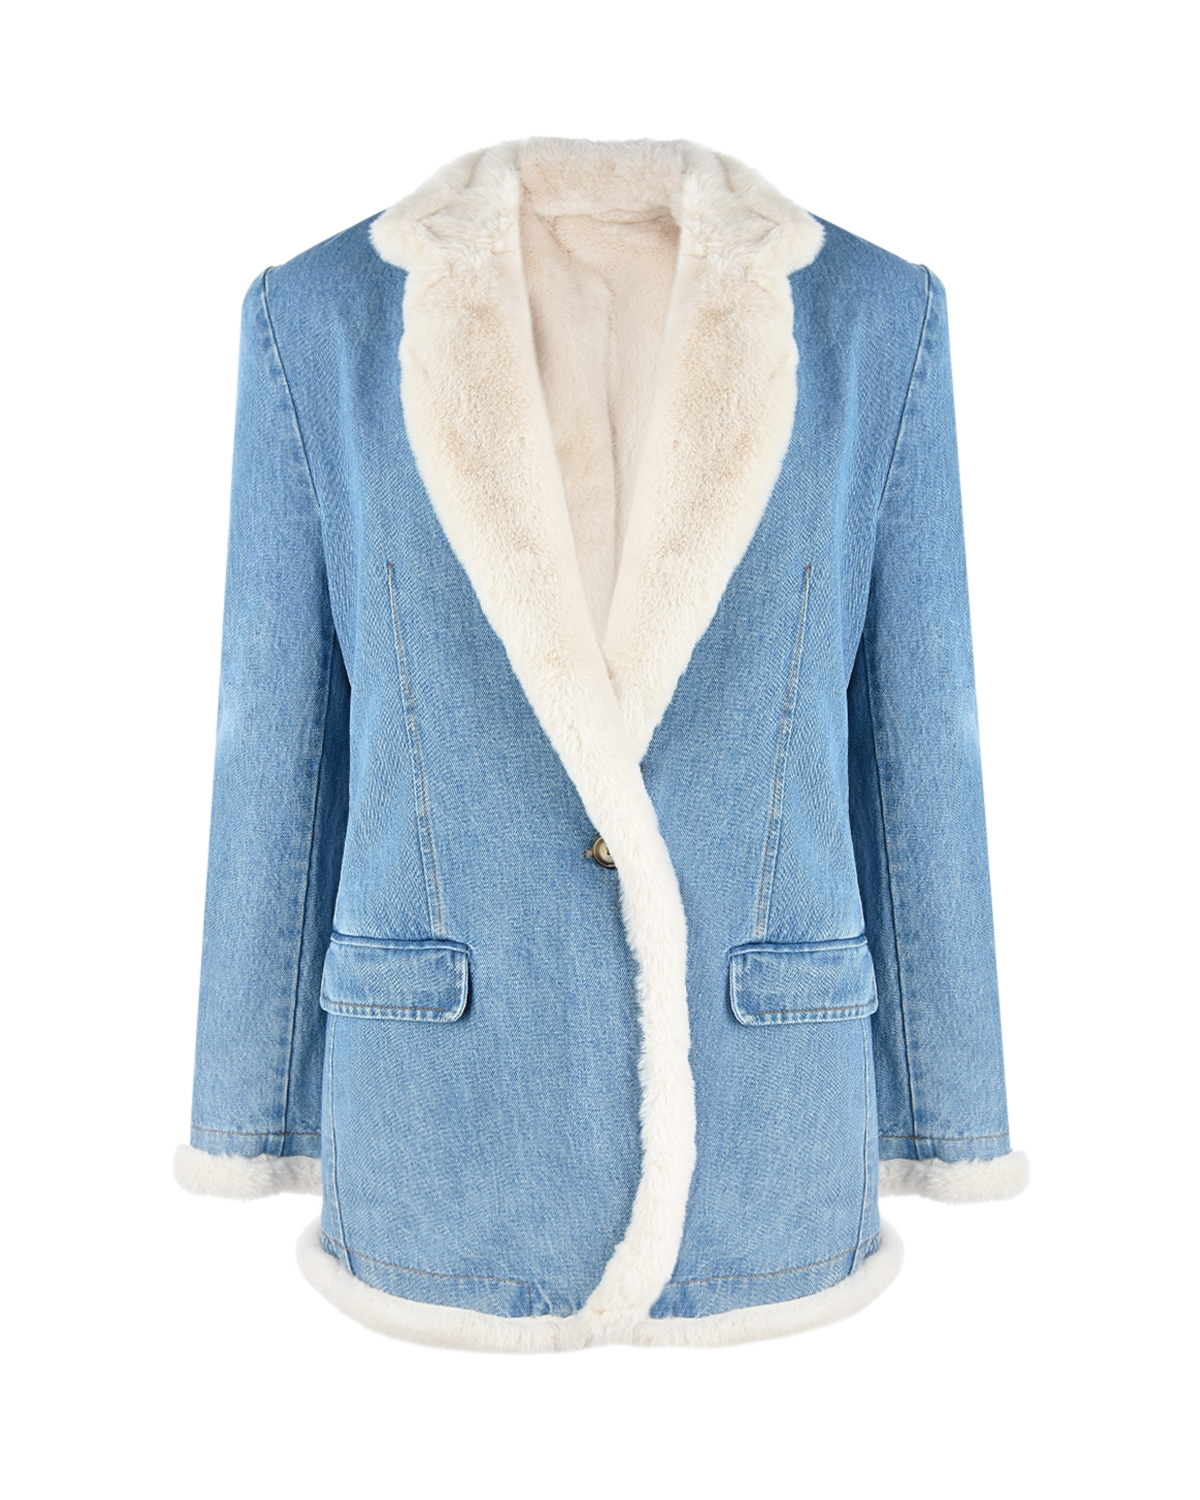 Джинсовая куртка с эко-мехом Forte dei Marmi Couture, размер 40, цвет голубой